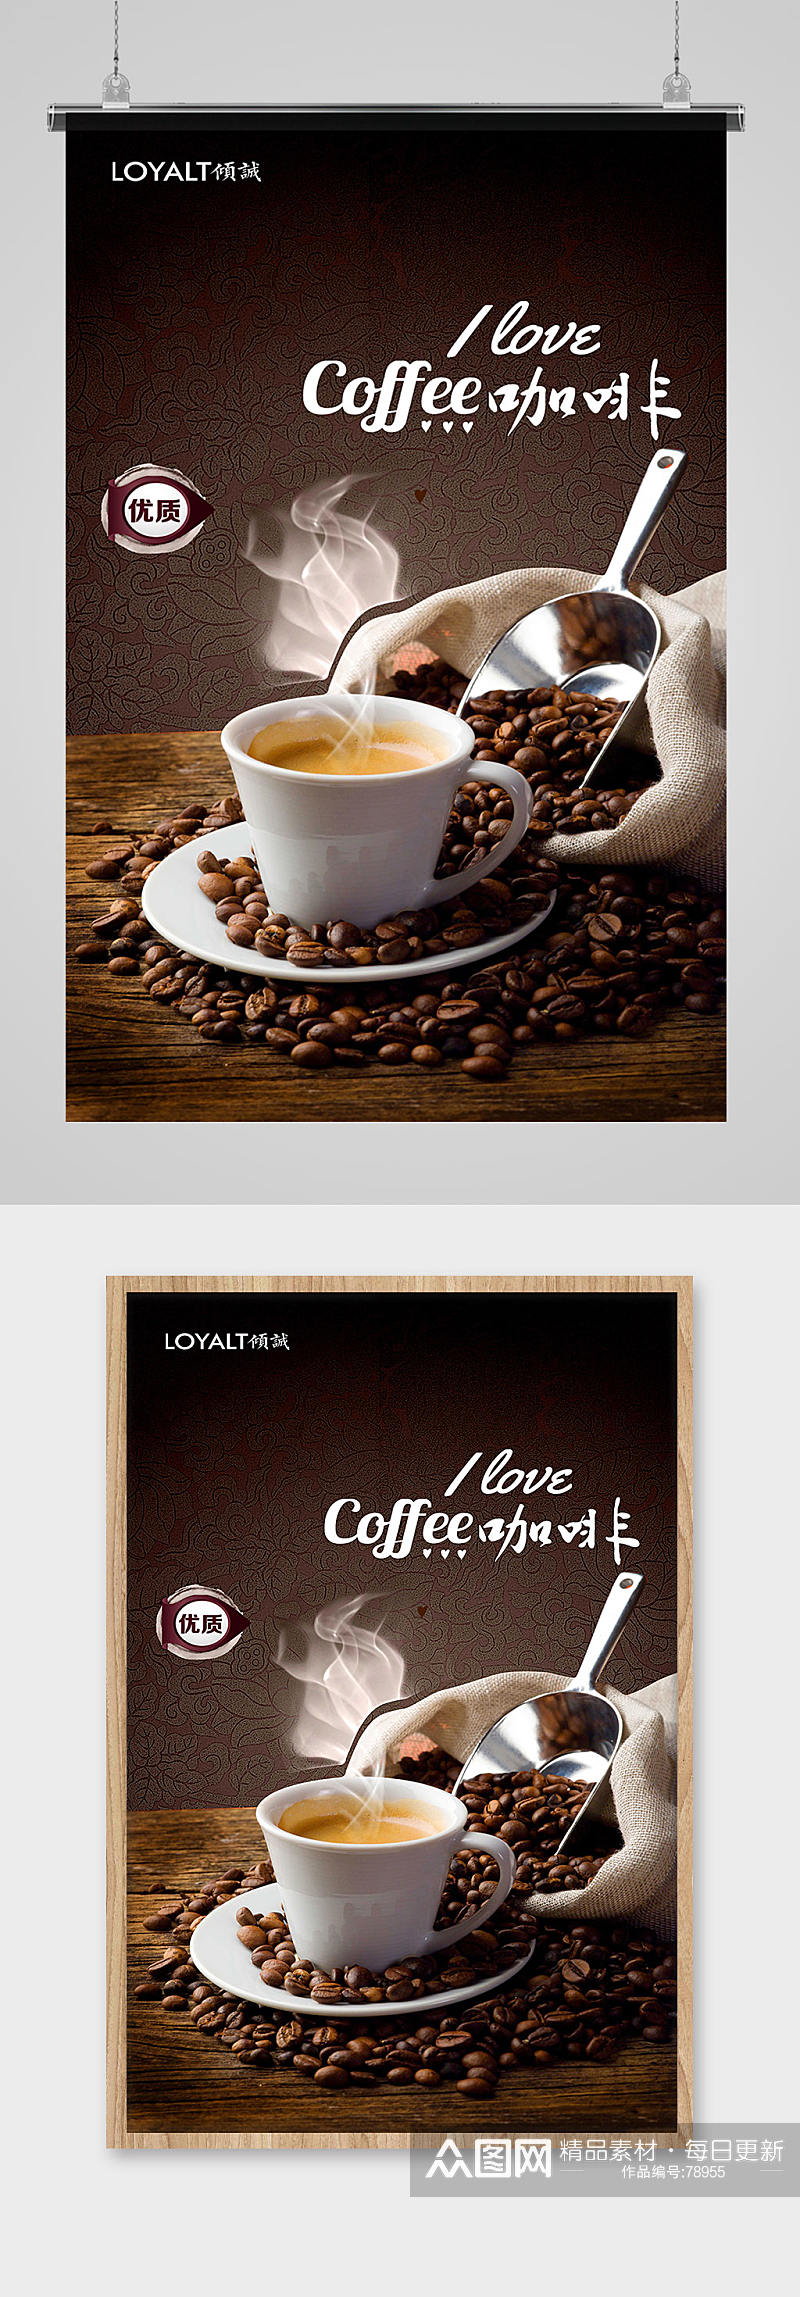 创意咖啡海报设计模板素材